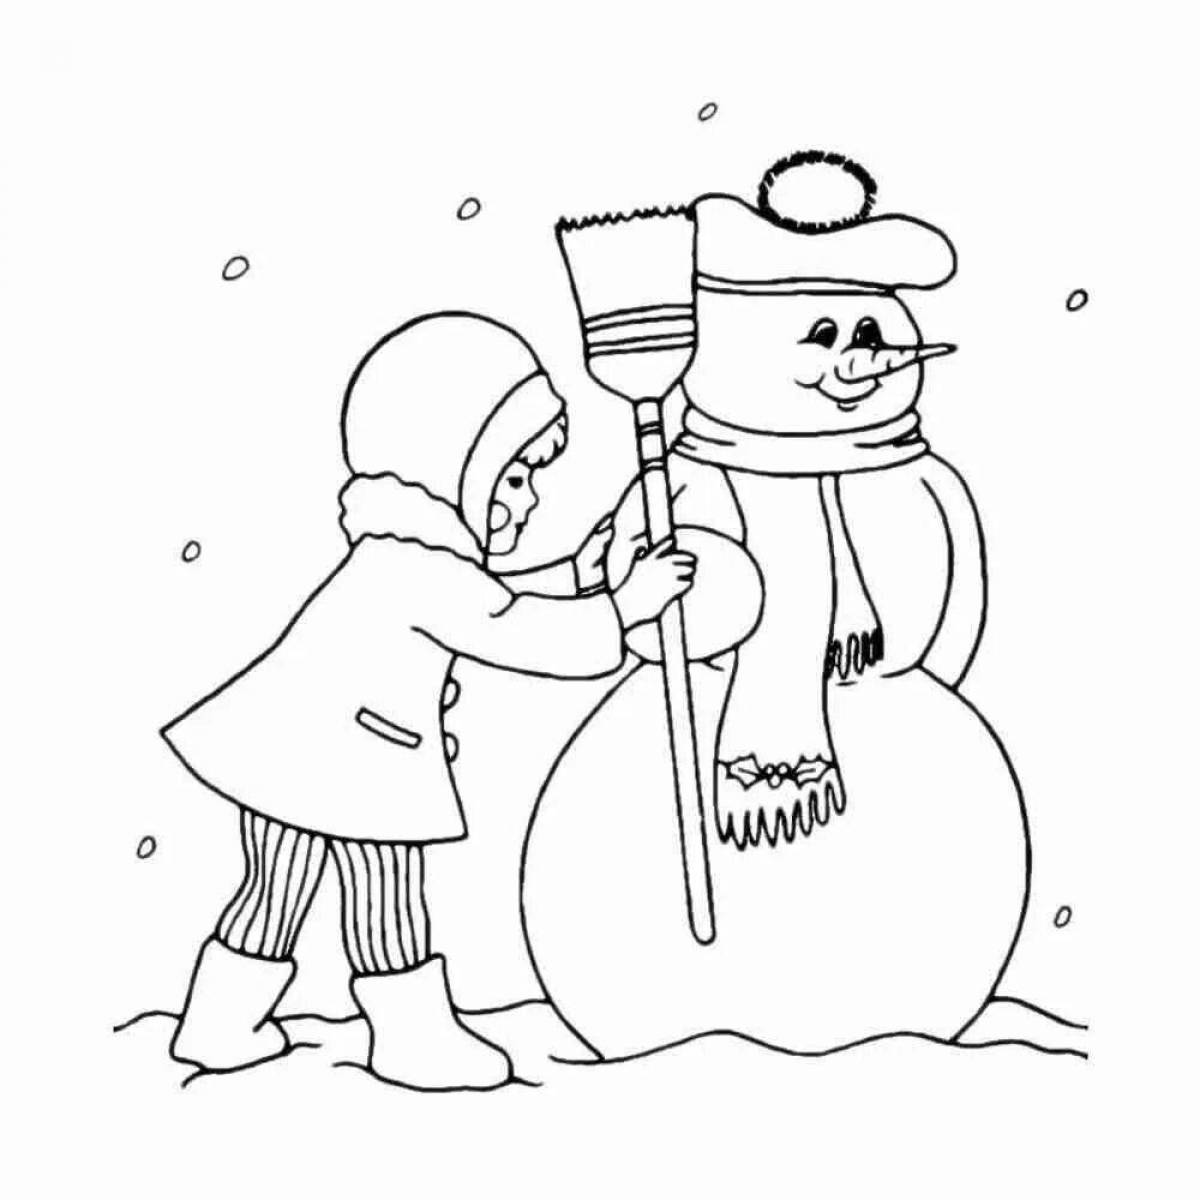 Буйные снеговики в пушистых шапках и шарфах